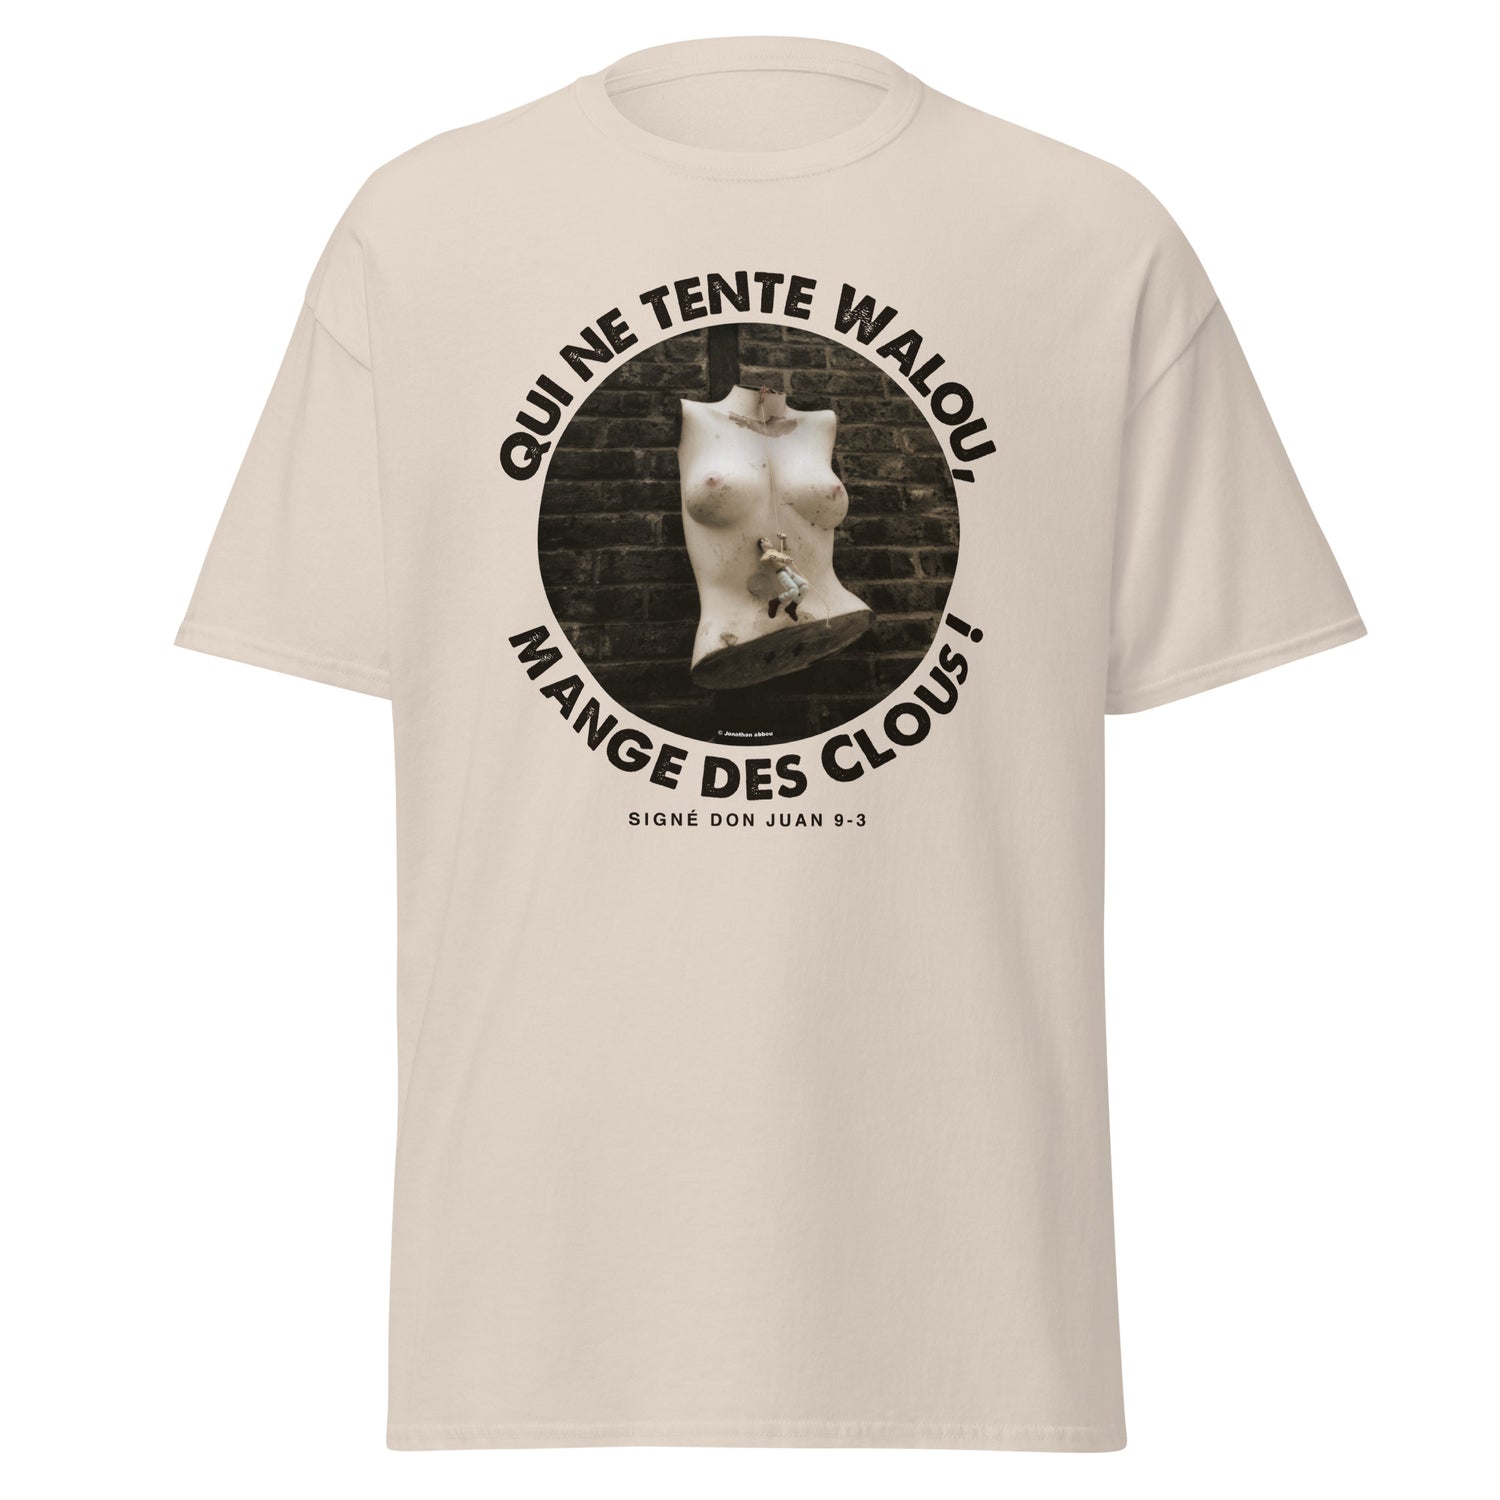 Jonathan abbou - T-shirt classique - Clous